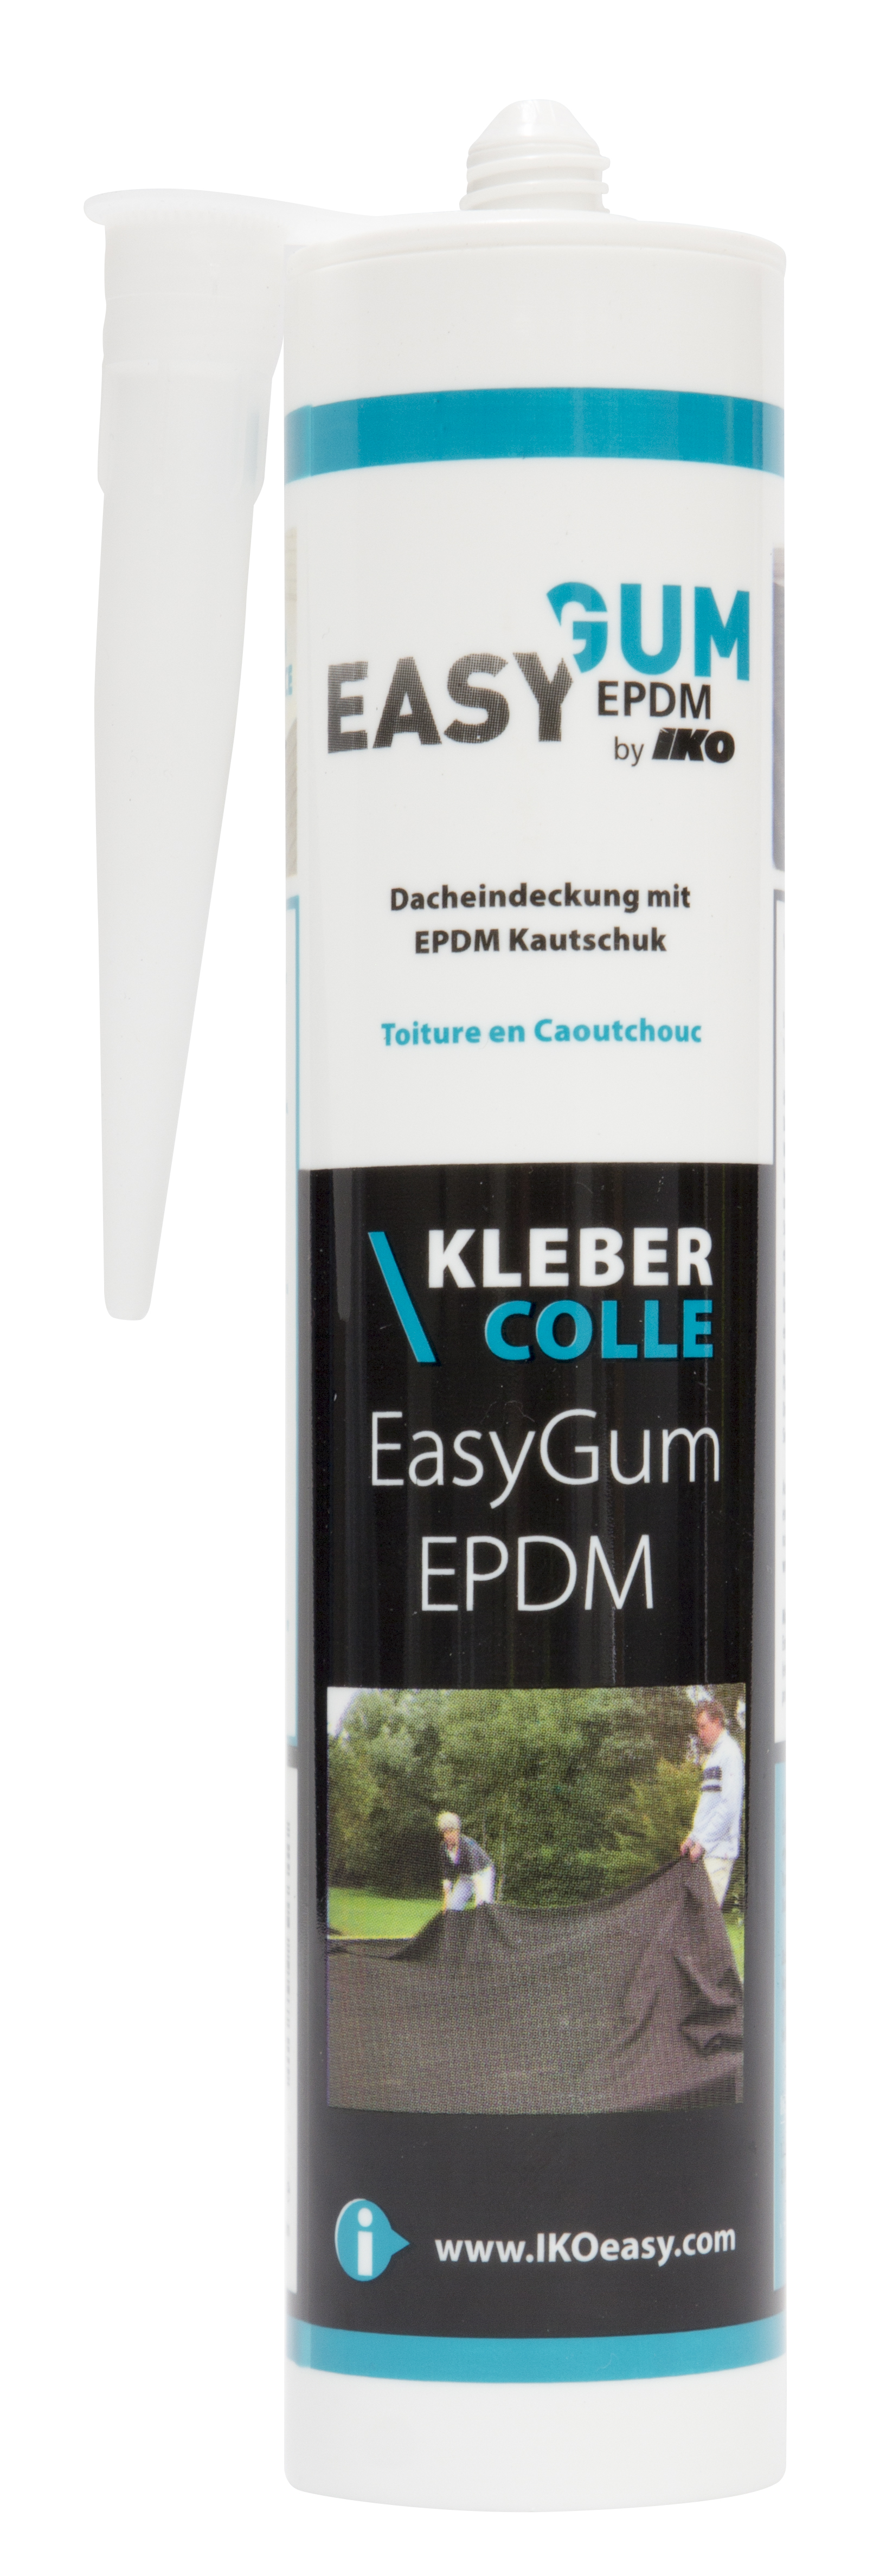 EPDM-Kleber Schwarz Kartusche 290 ml kaufen? Folien kleben